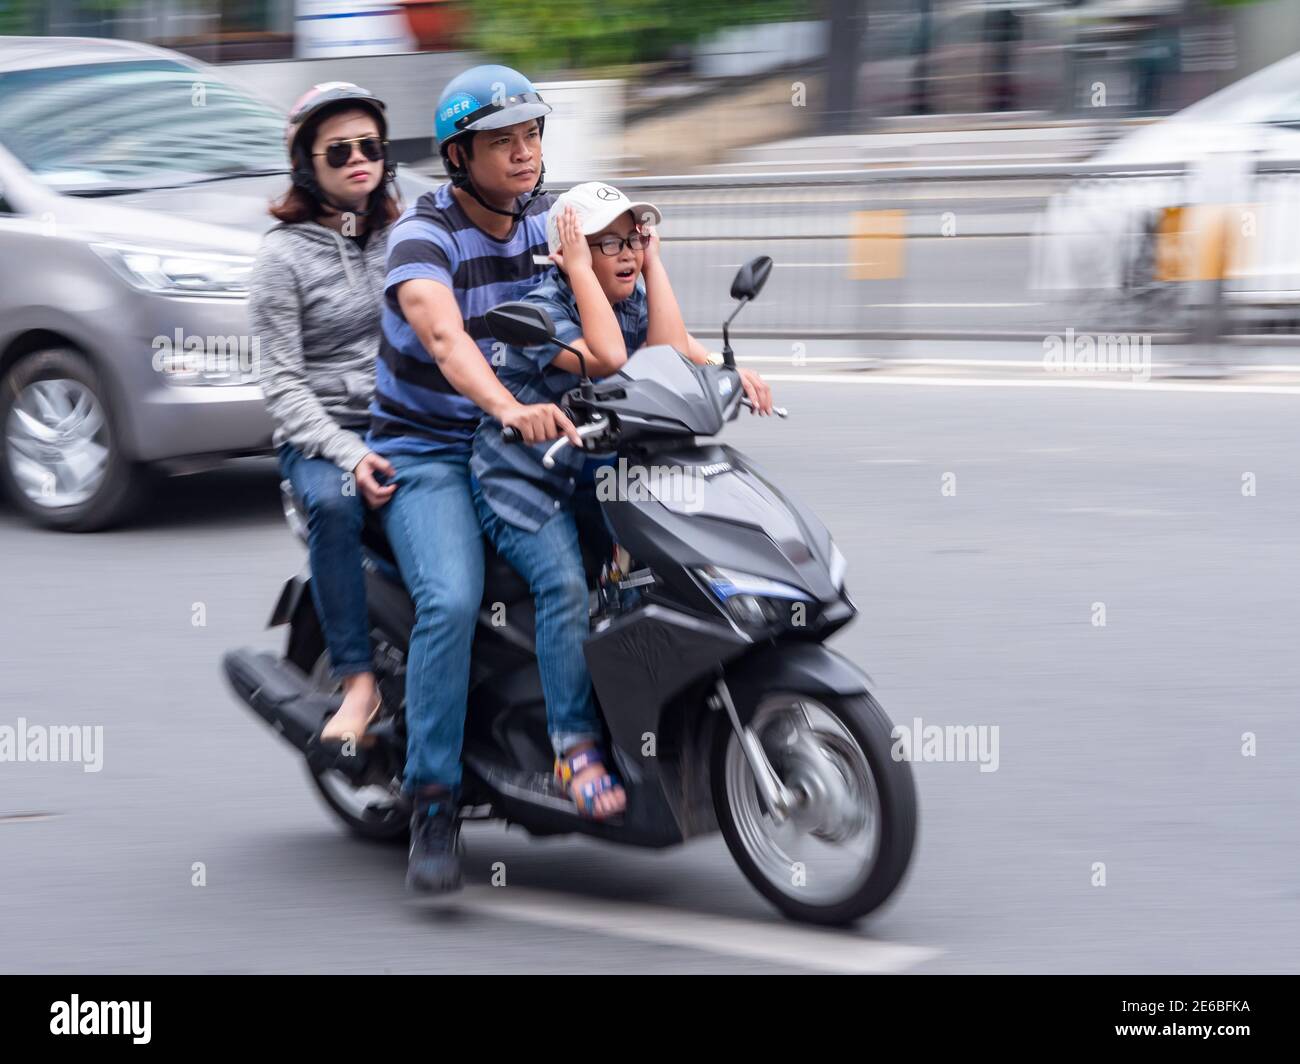 Moto avec trois personnes à la vitesse dans le District 1, Ho Chi Minh ville, Vietnam. La photo, à l'exception du conducteur, est floue en raison de la vitesse. Banque D'Images